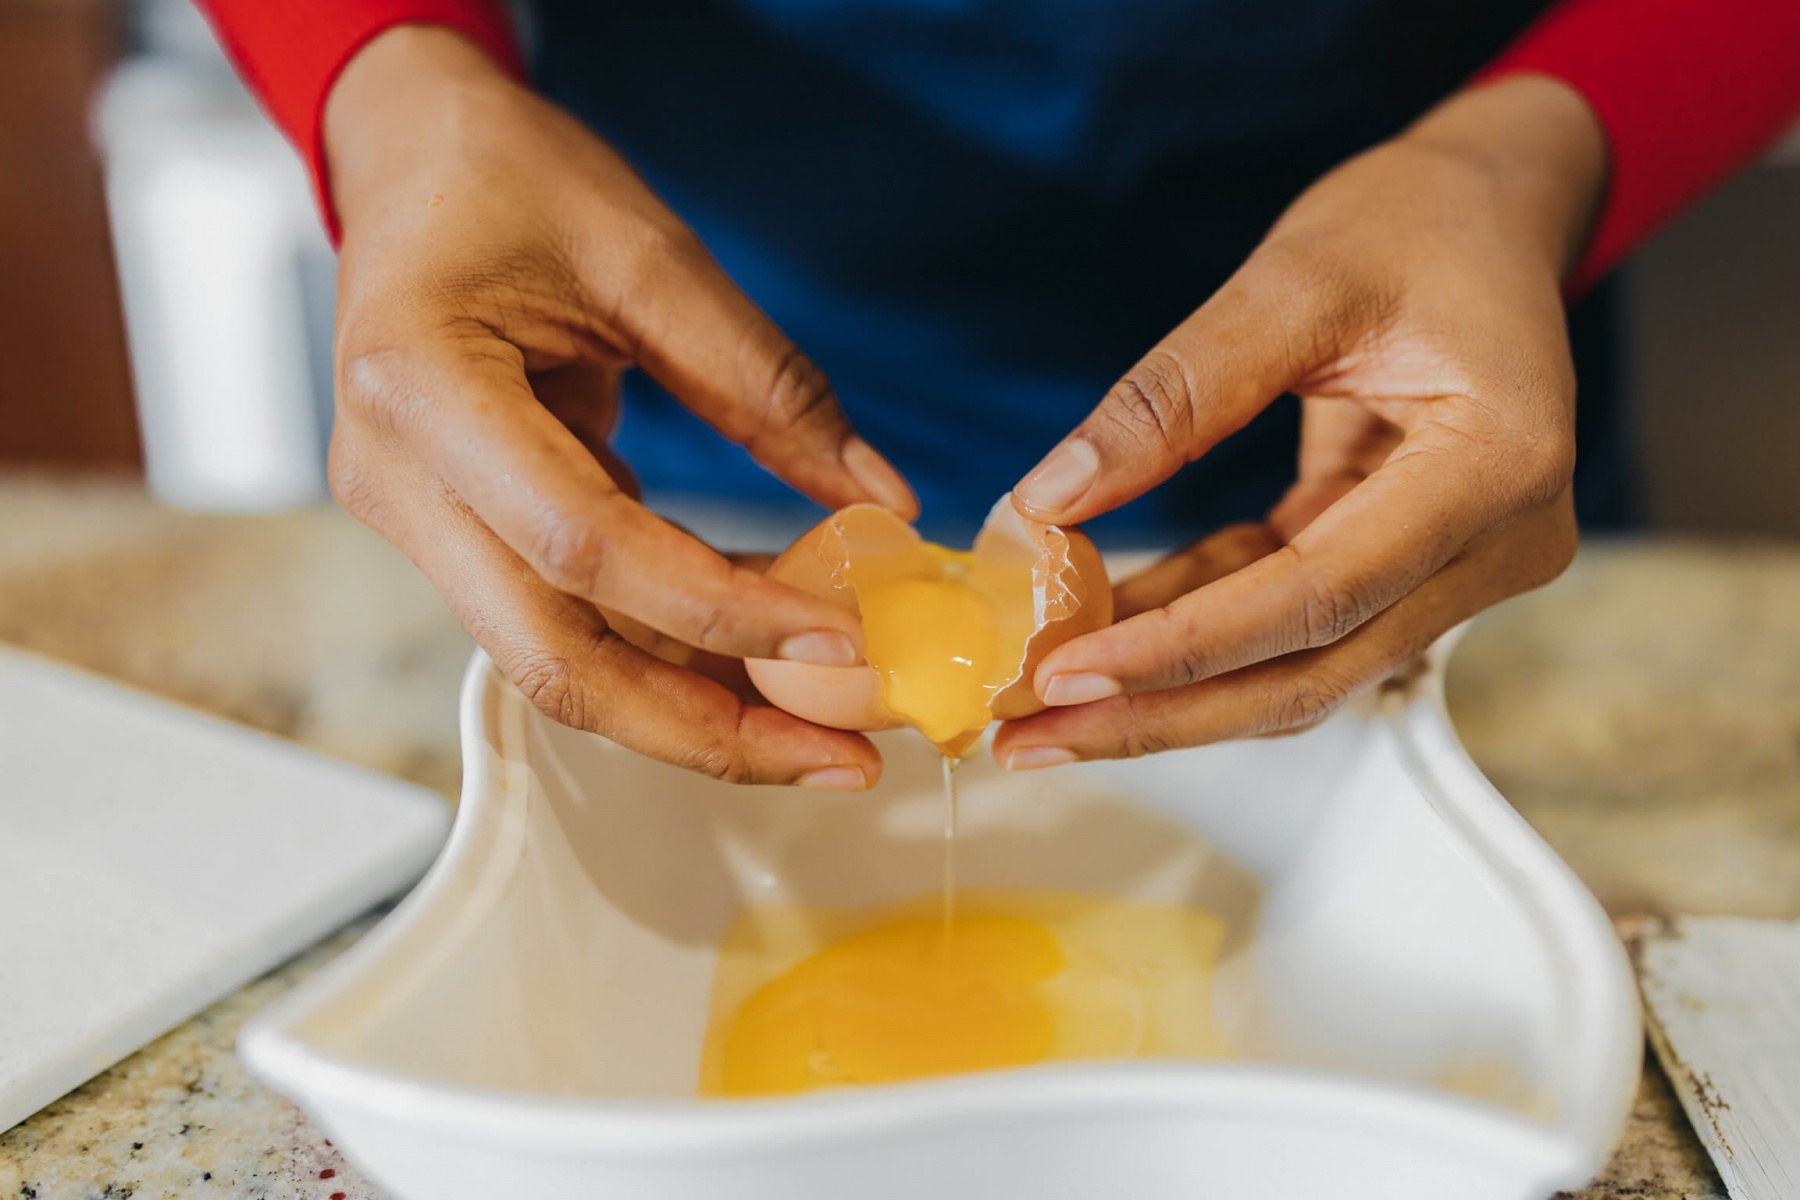 شکستن تخم مرغ با یک دست به روش حرفه ای